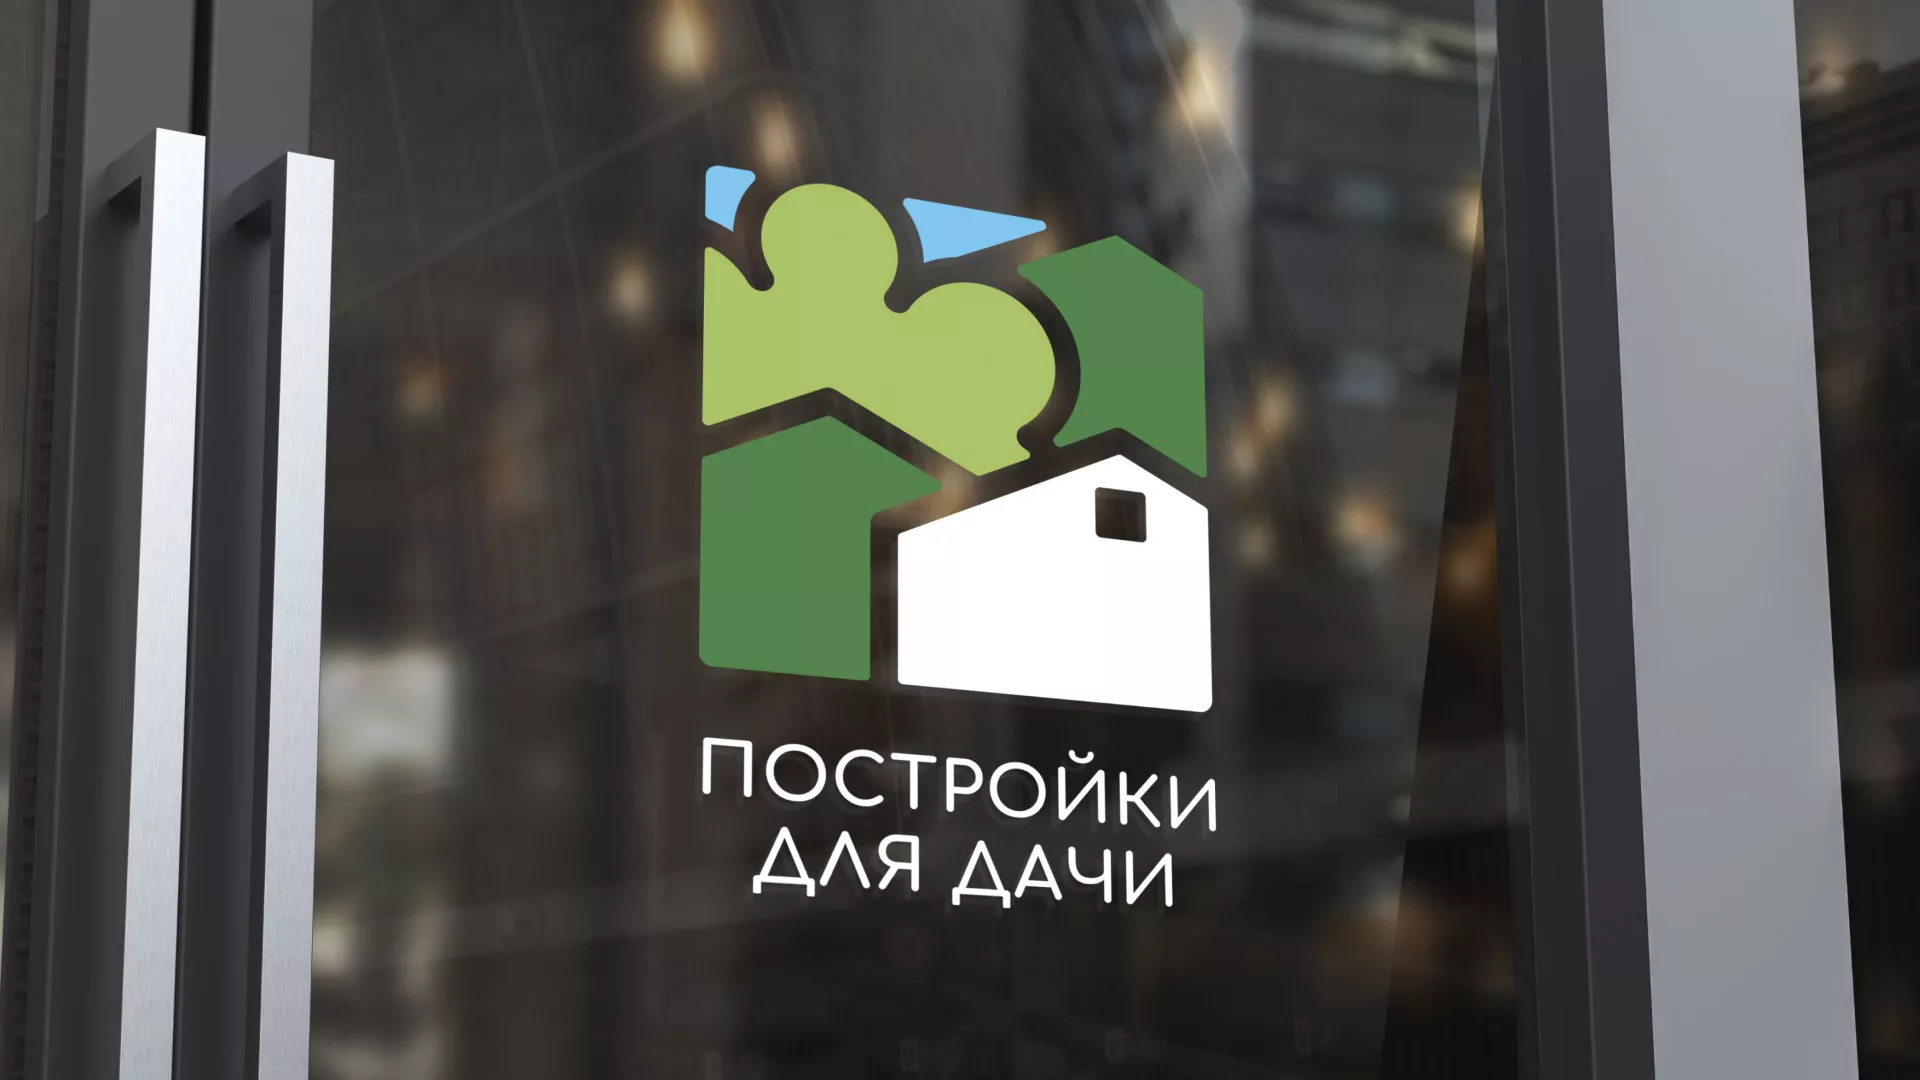 Разработка логотипа в Дигоре для компании «Постройки для дачи»